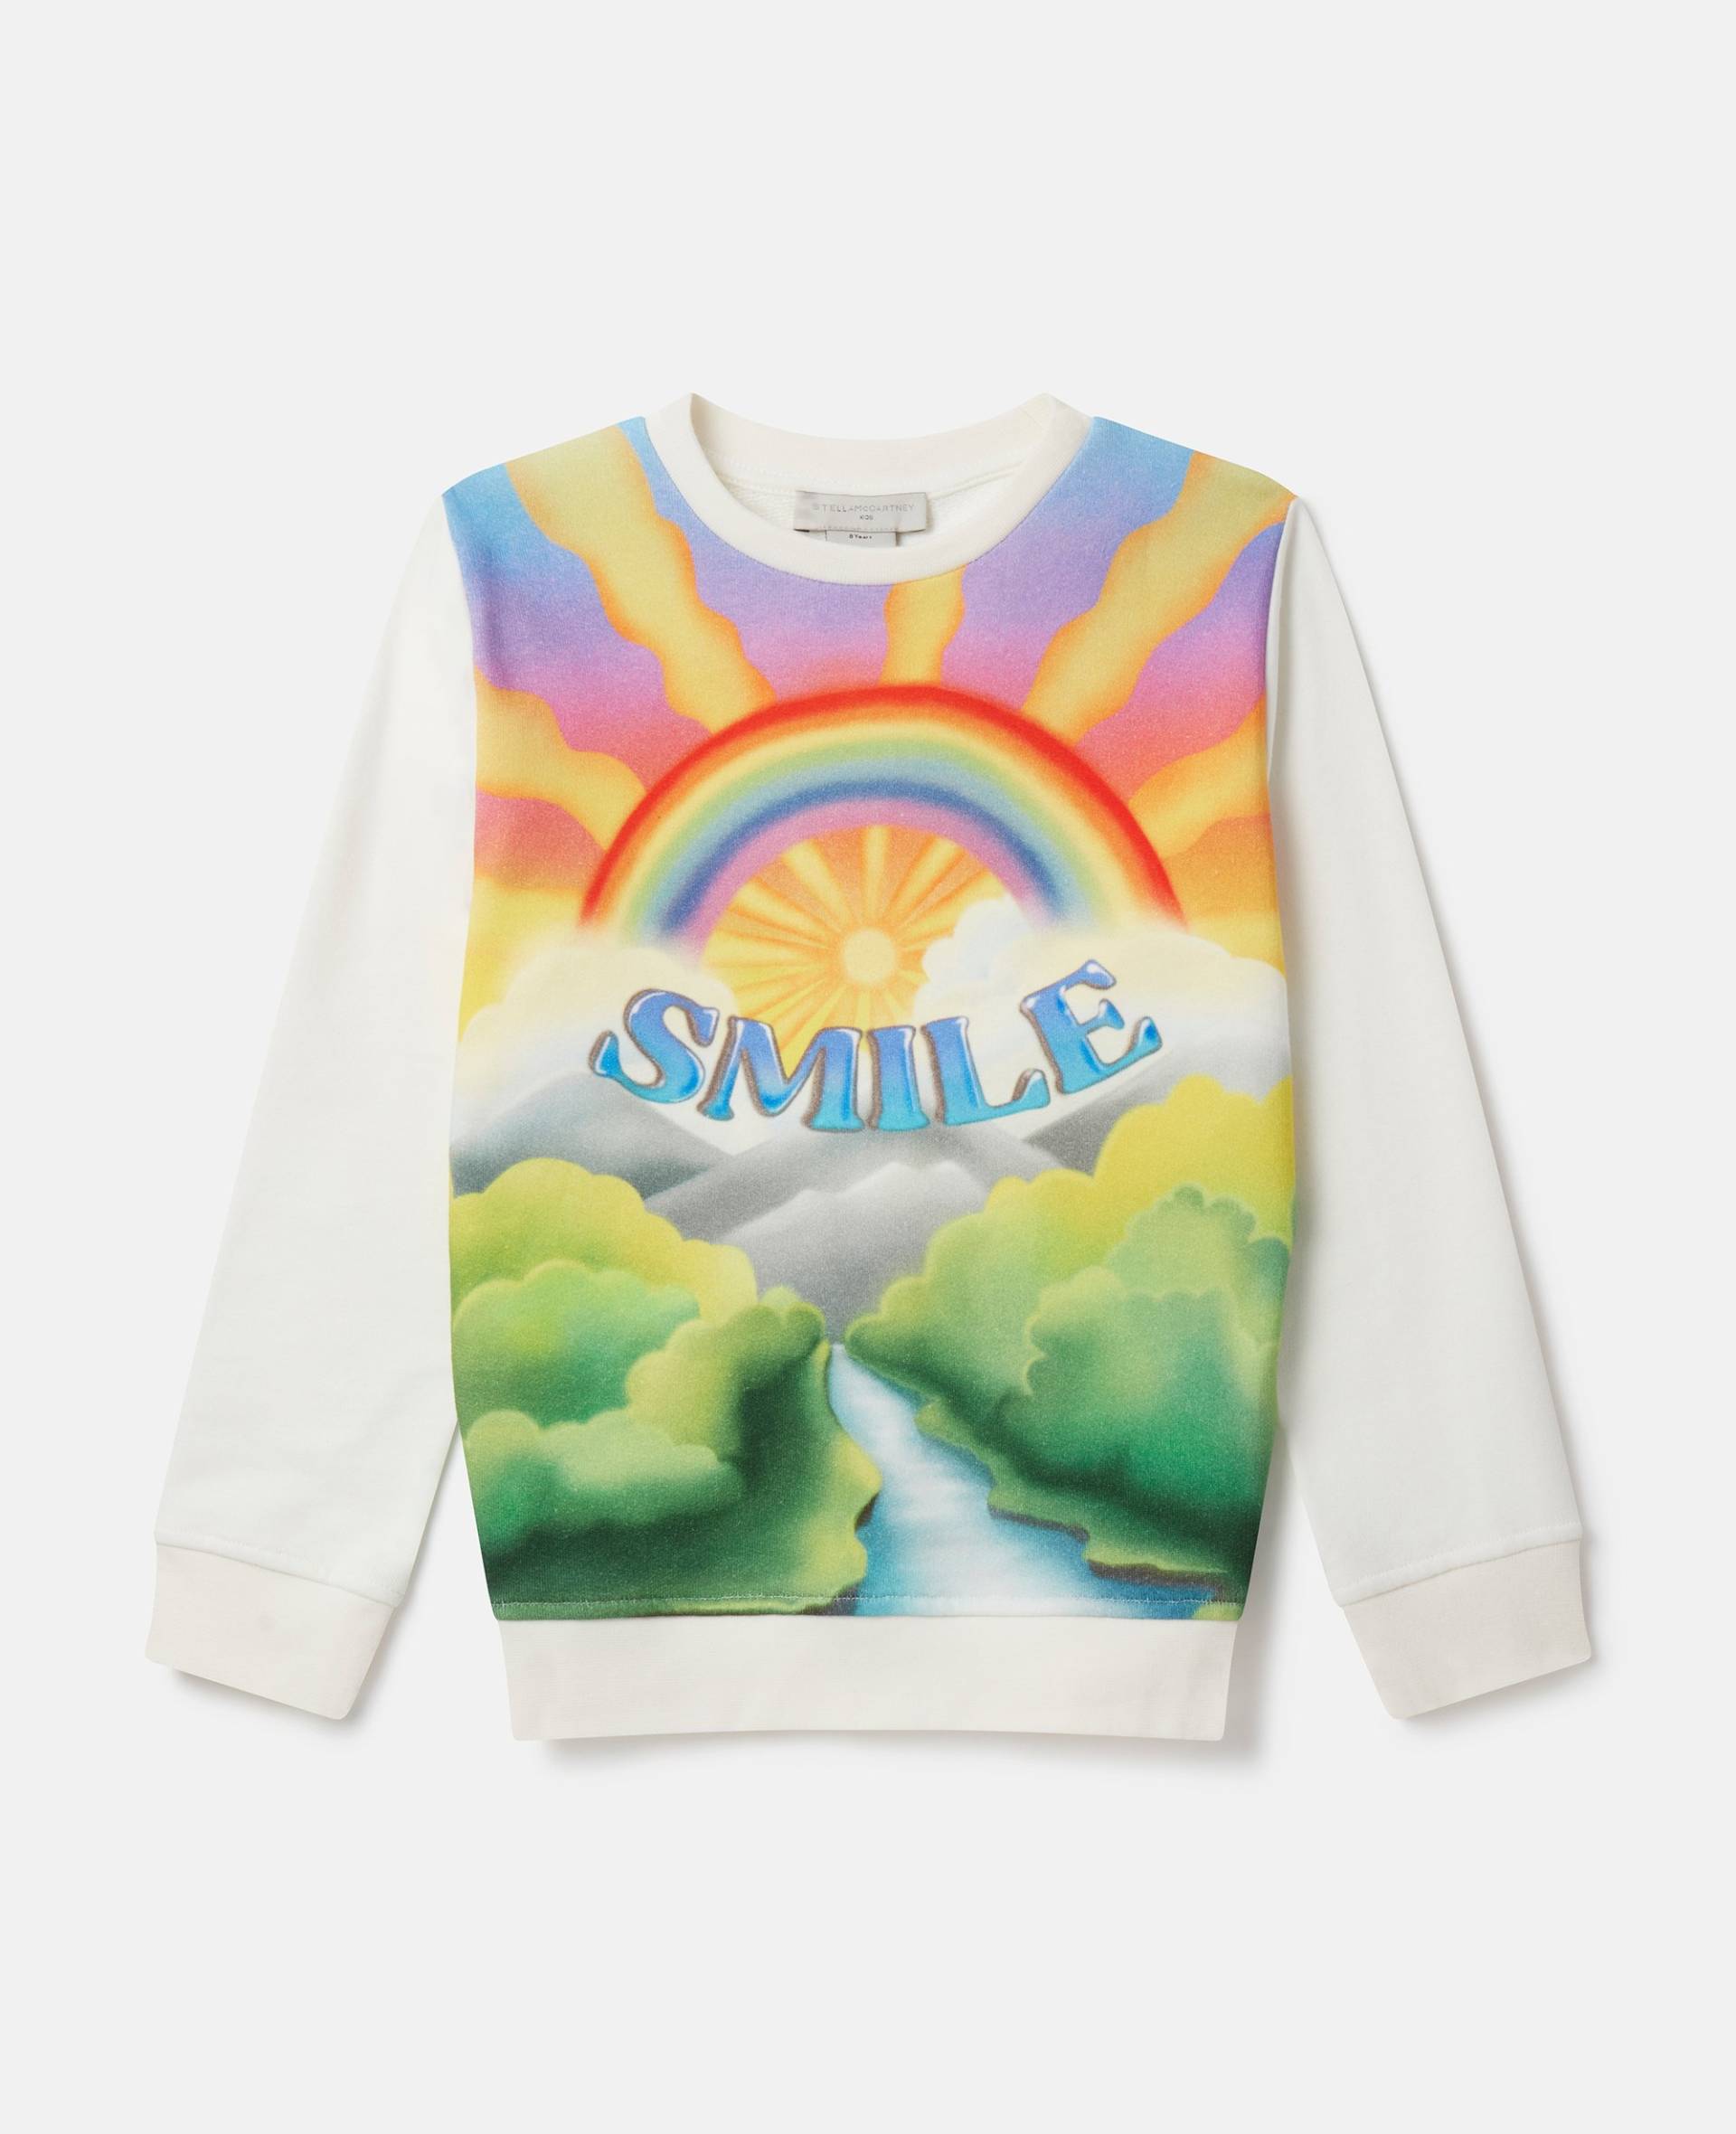 Stella McCartney - Sweatshirt mit Smile-Print, Frau, Elfenbein, Größe: 6 von Stella McCartney